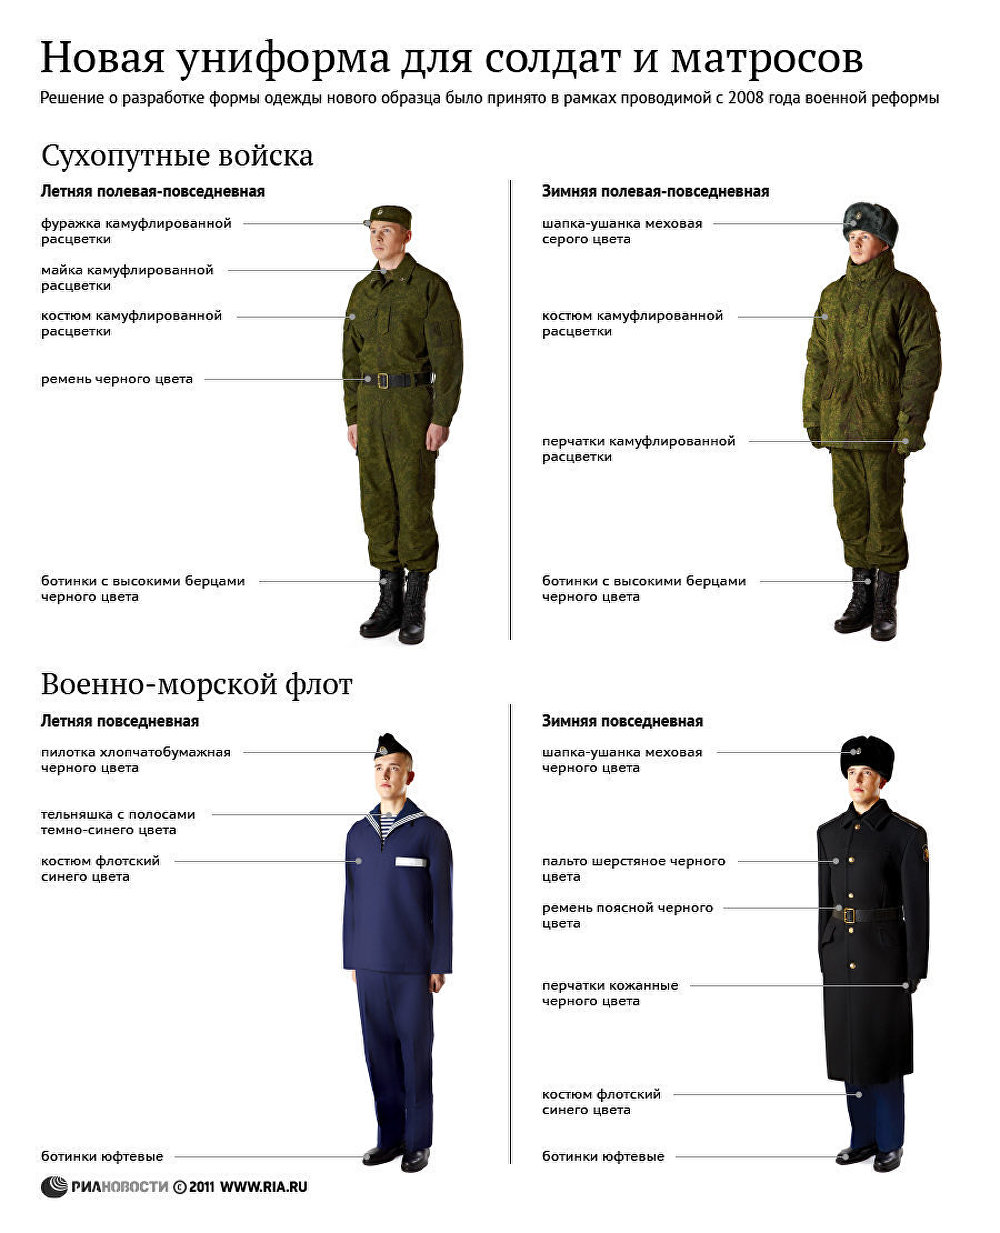 Полевая форма одежды военнослужащих Российской армии